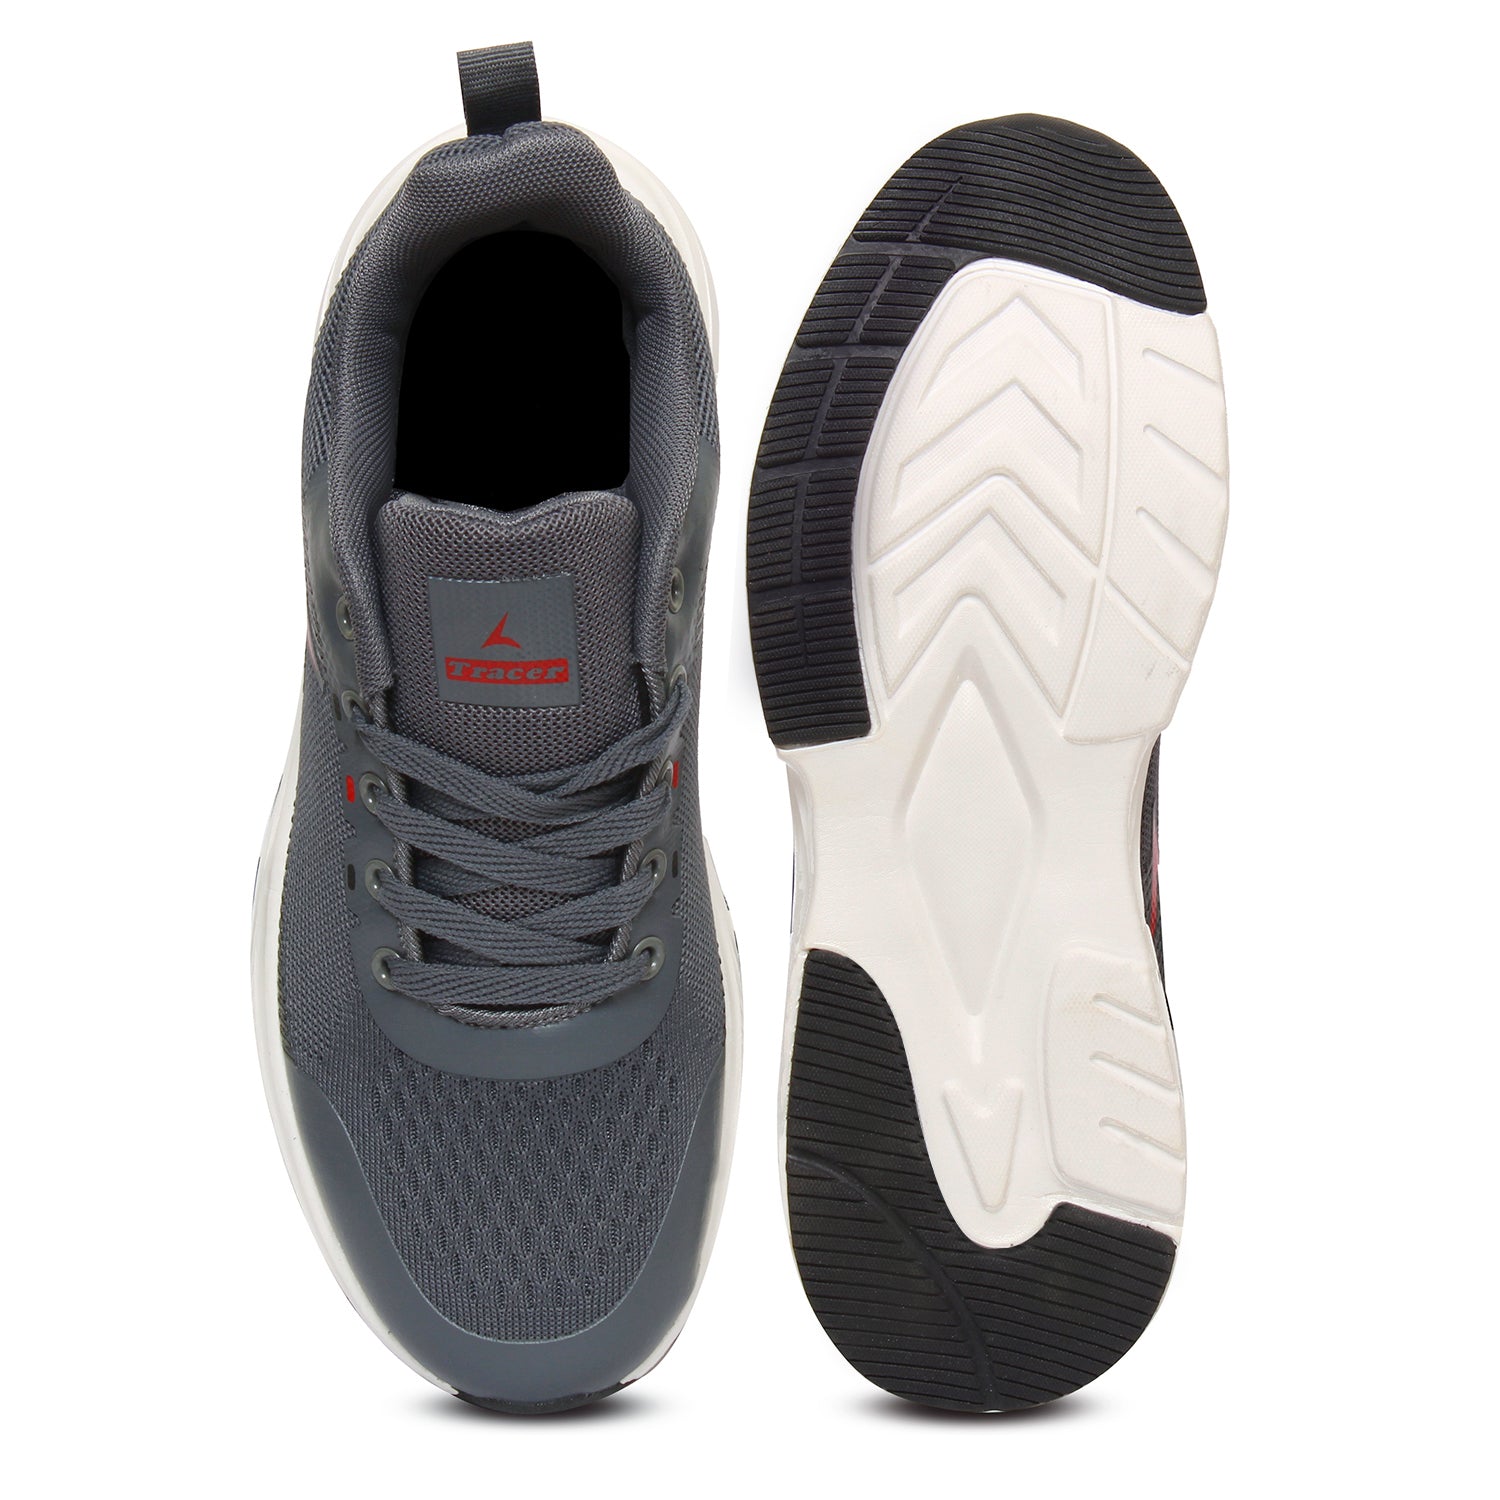  Men's Running Shoes Grey